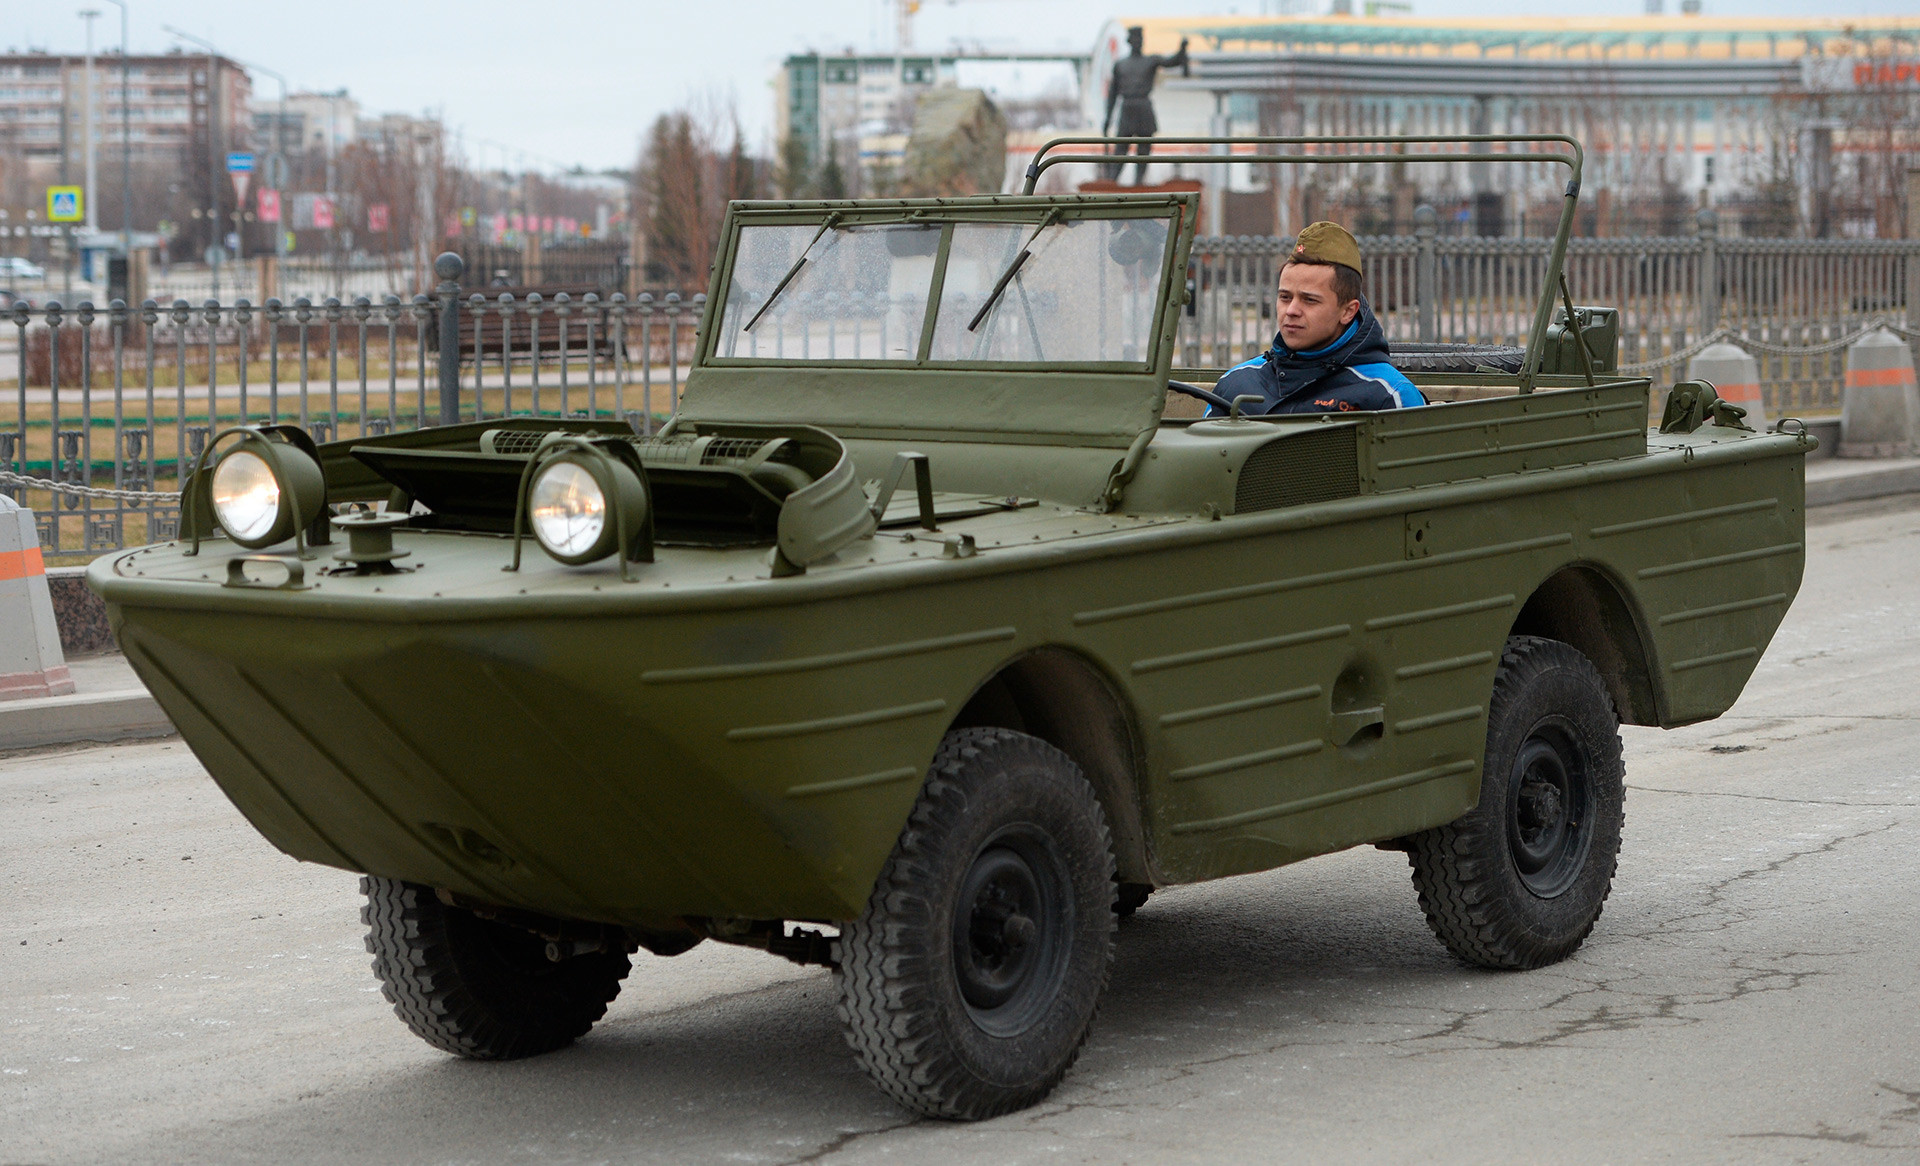 Плаващият автомобил ГАЗ-46 на репетиция за военния парад по повод 73-годишнината от победата във Великата отечествена война в гр. Верхная Пимша в Свредловска област.